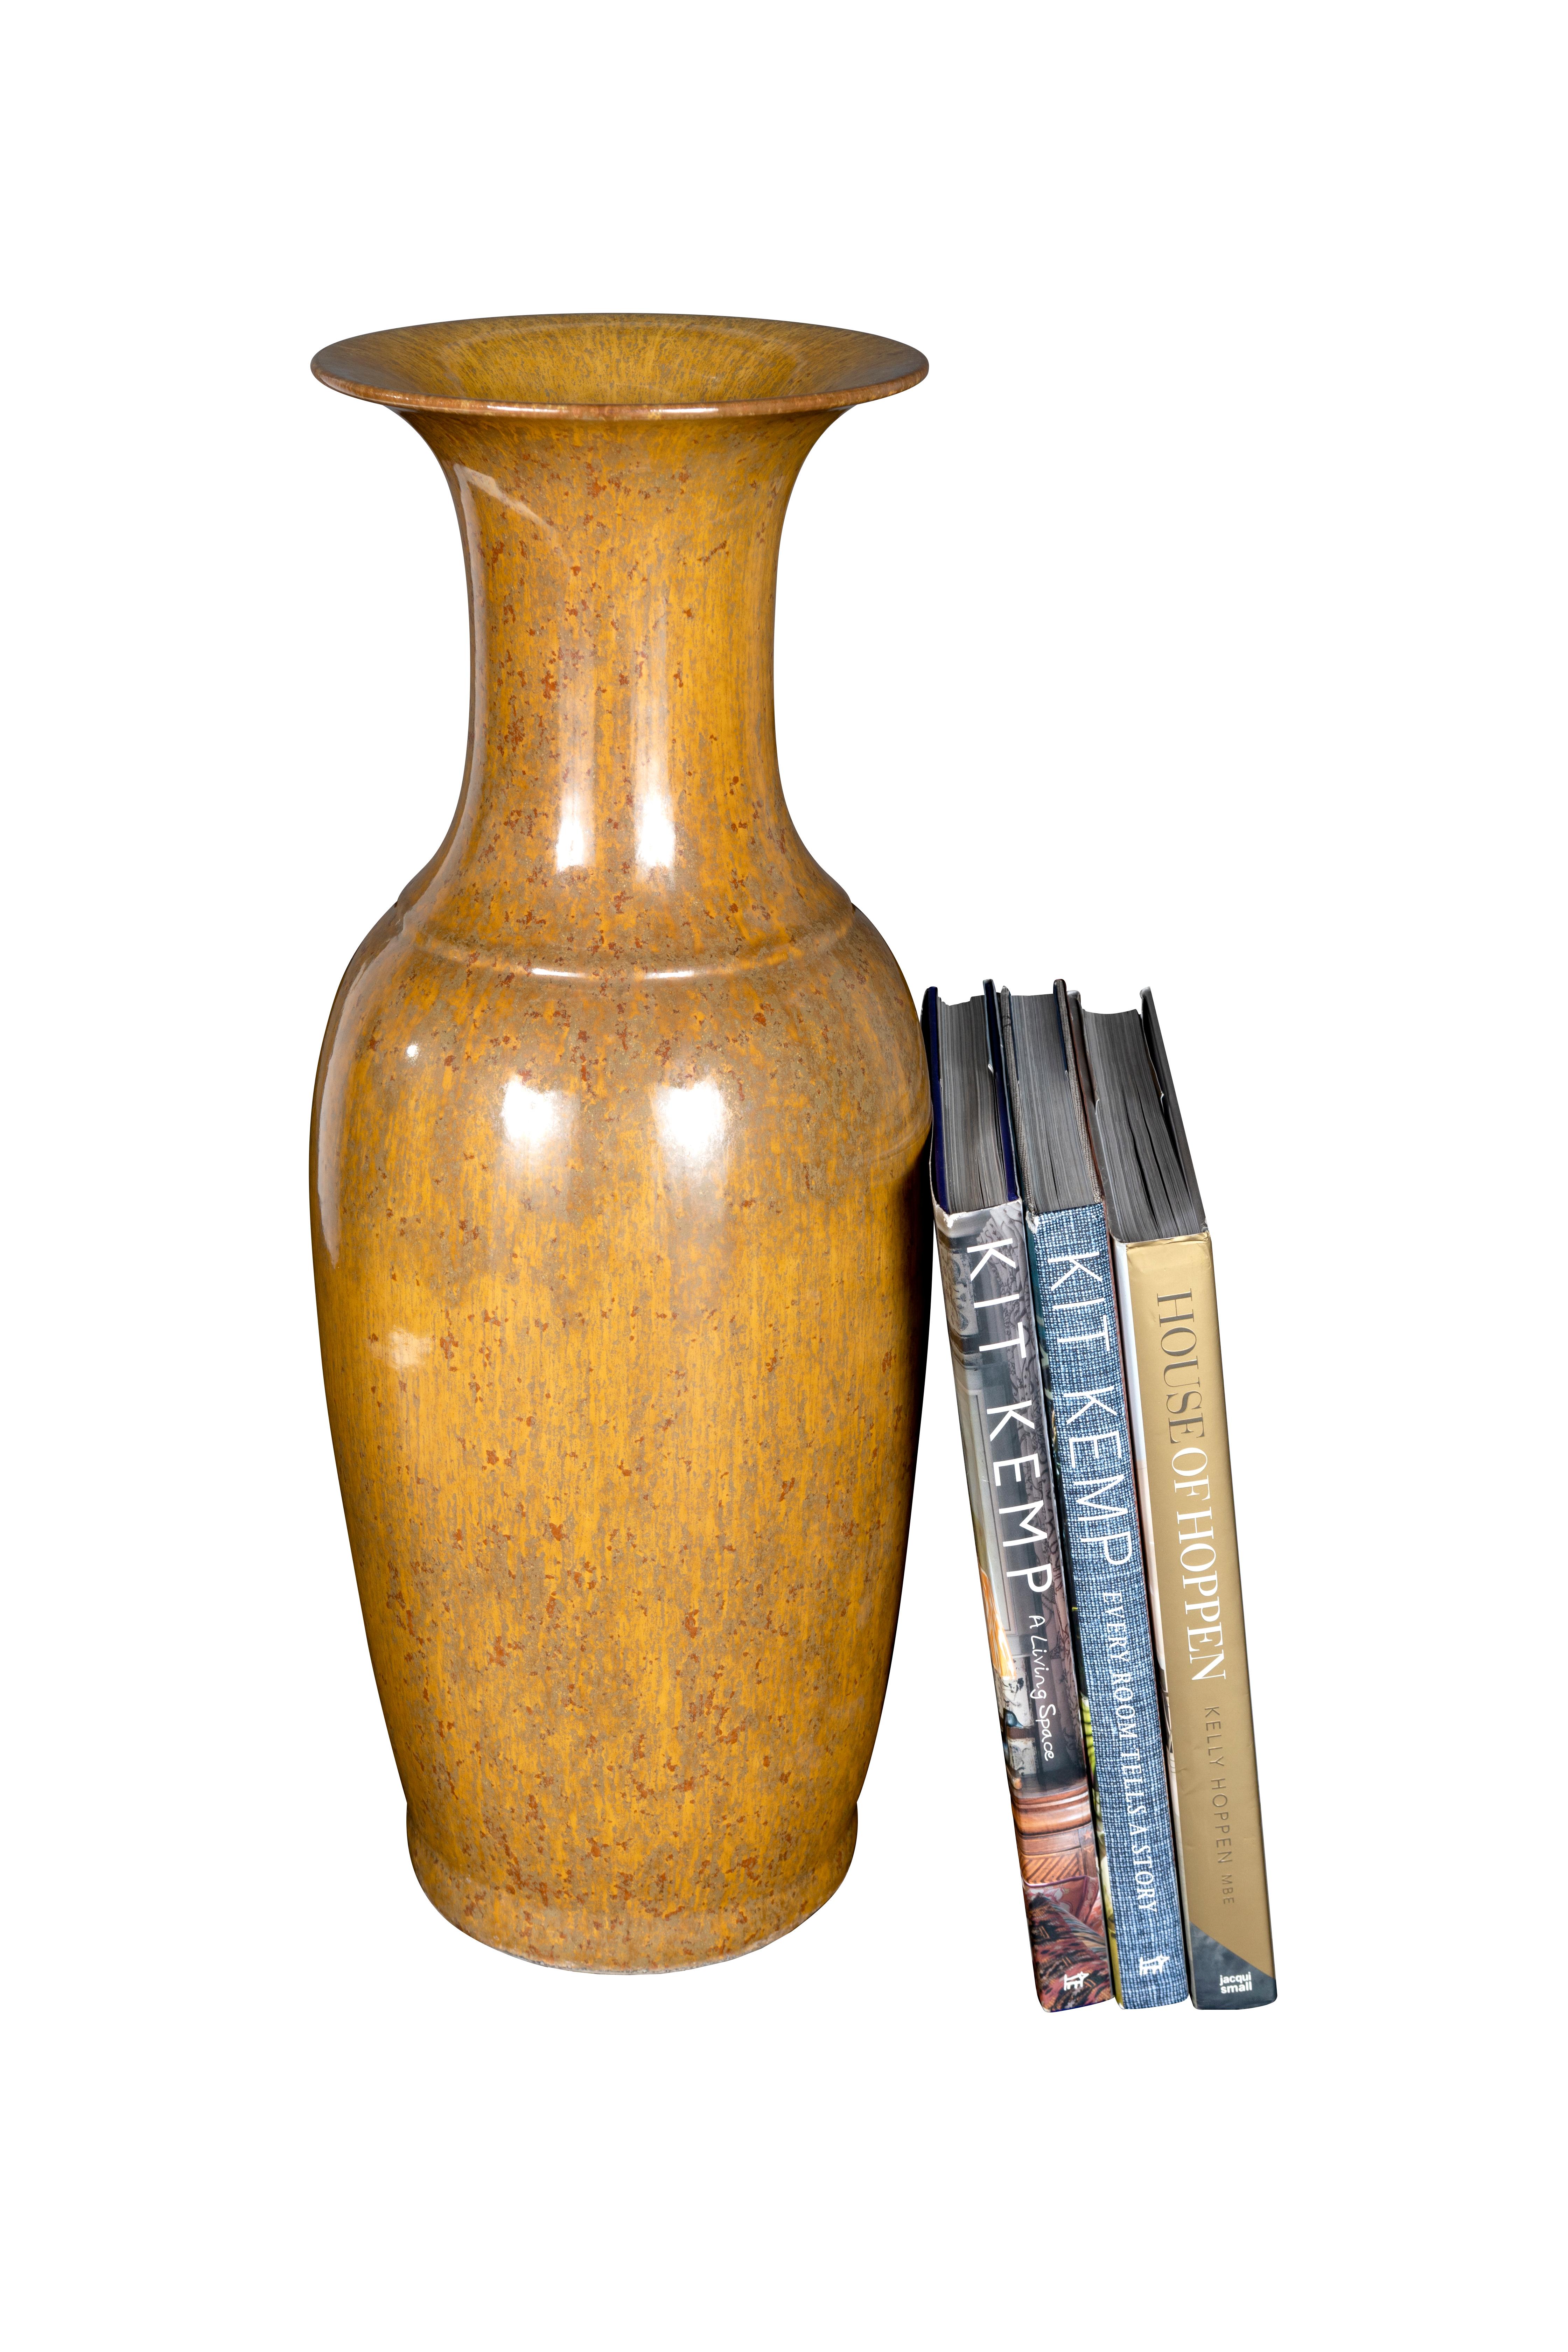 Vintage 1970's Senf farbig glasiert Vase. 

Handgefertigter Keramikkörper in Trompetenform.

Ausgezeichneter Zustand mit wenig bis gar keiner Abnutzung.

Das Stück ist Teil unserer einmaligen Kollektion Le Monde. Exklusiv für uns. 

Die von